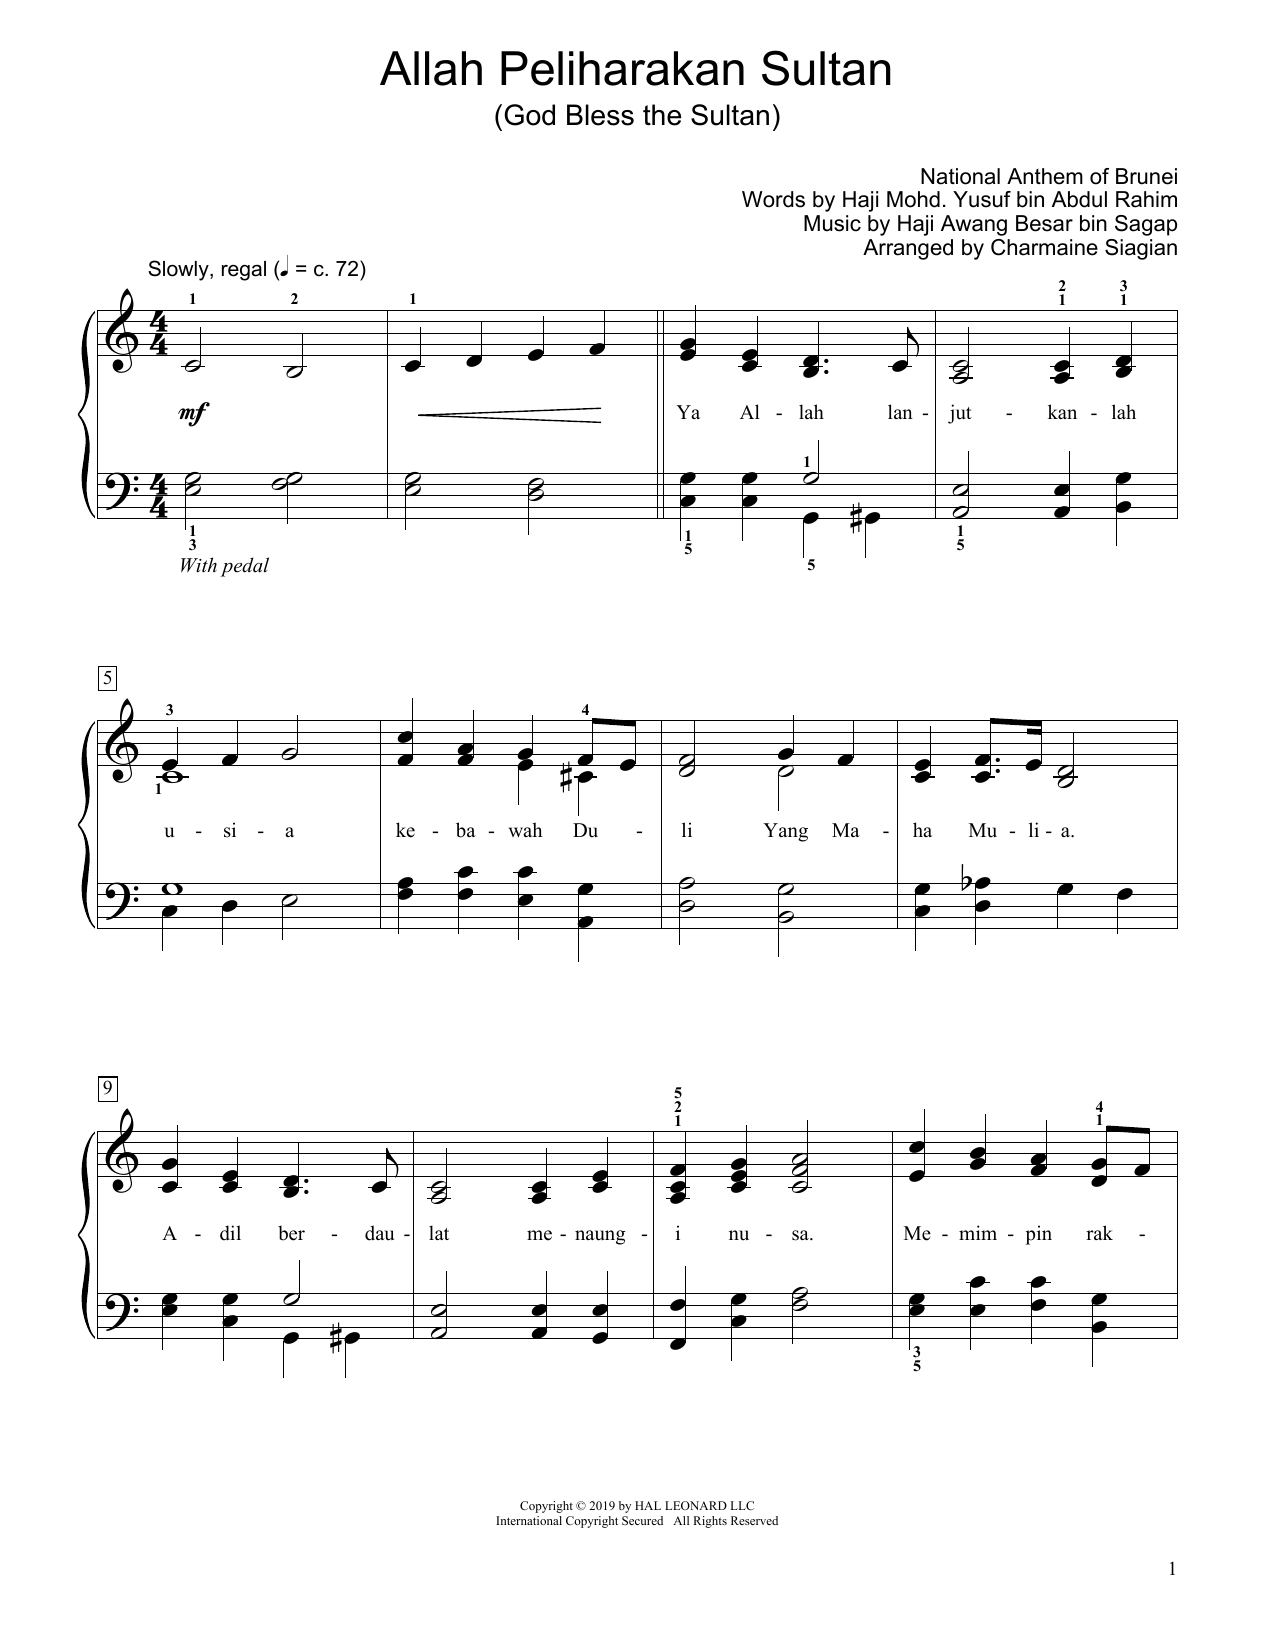 Haji Awang bin Sagap God Bless The Sultan (Allah Peliharakan Sultan) (arr. Charmaine Siagian) Sheet Music Notes & Chords for Educational Piano - Download or Print PDF